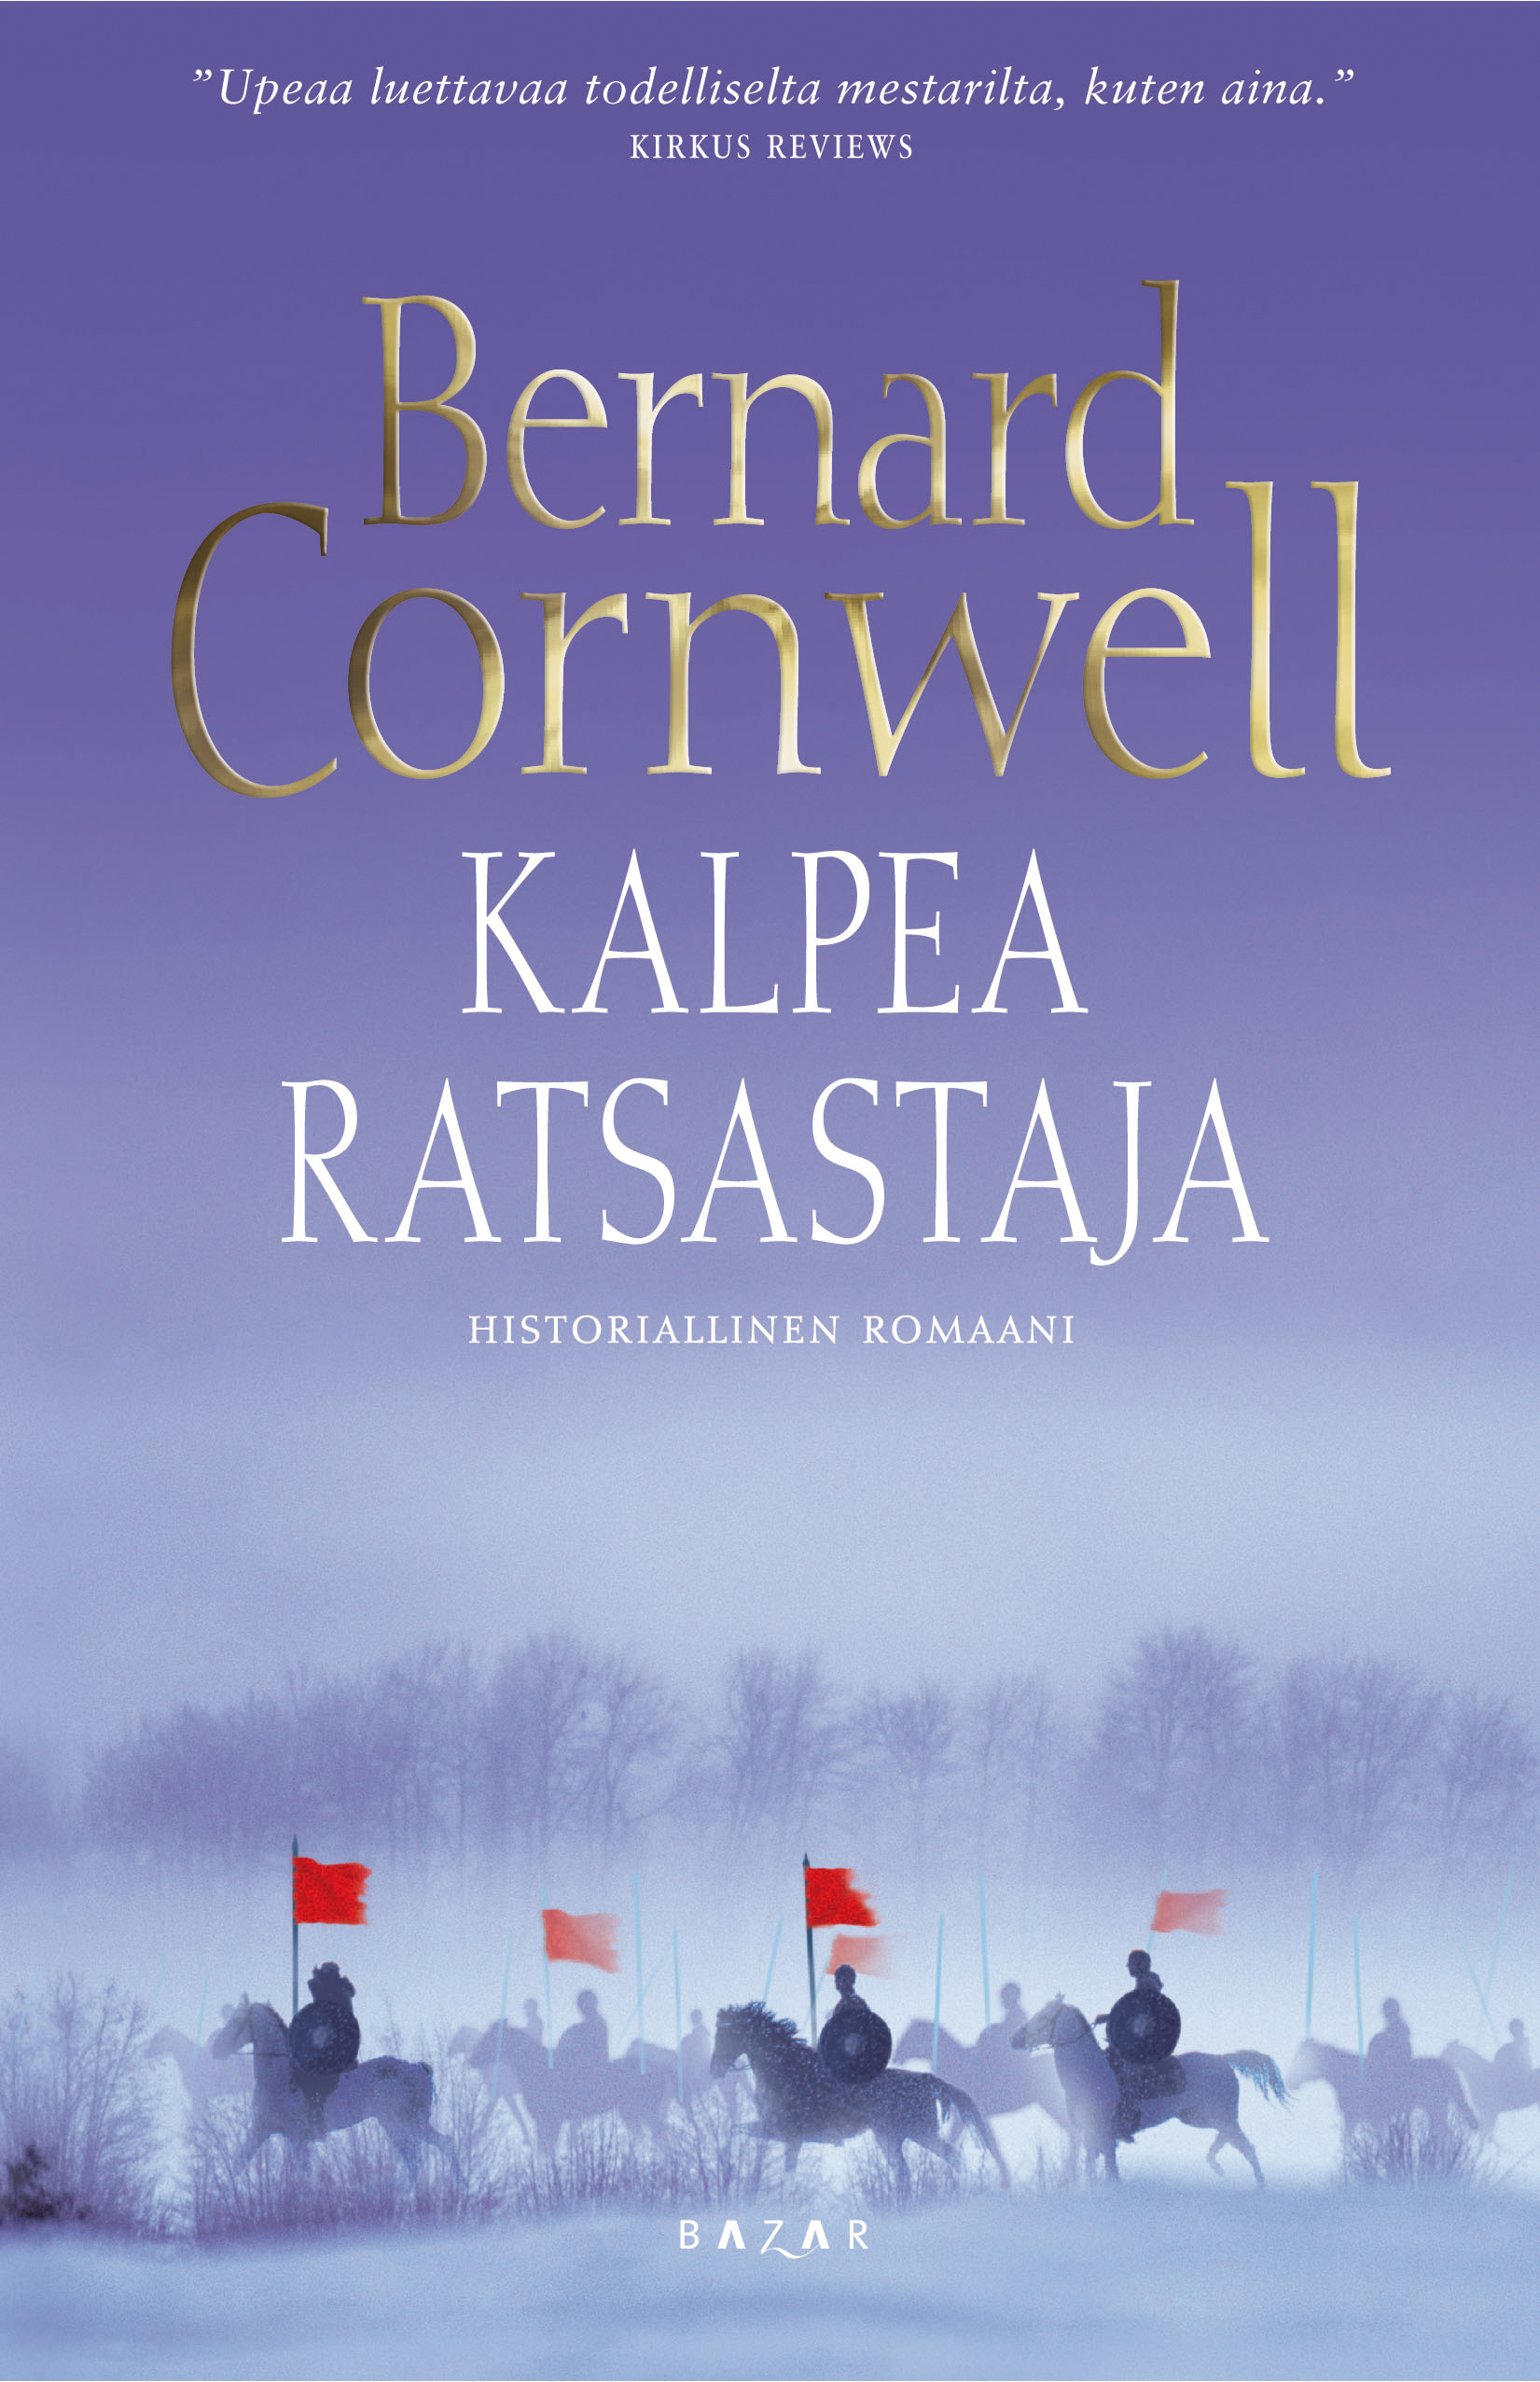 Cornwell, Bernard - Kalpea ratsastaja: historiallinen romaani, ebook